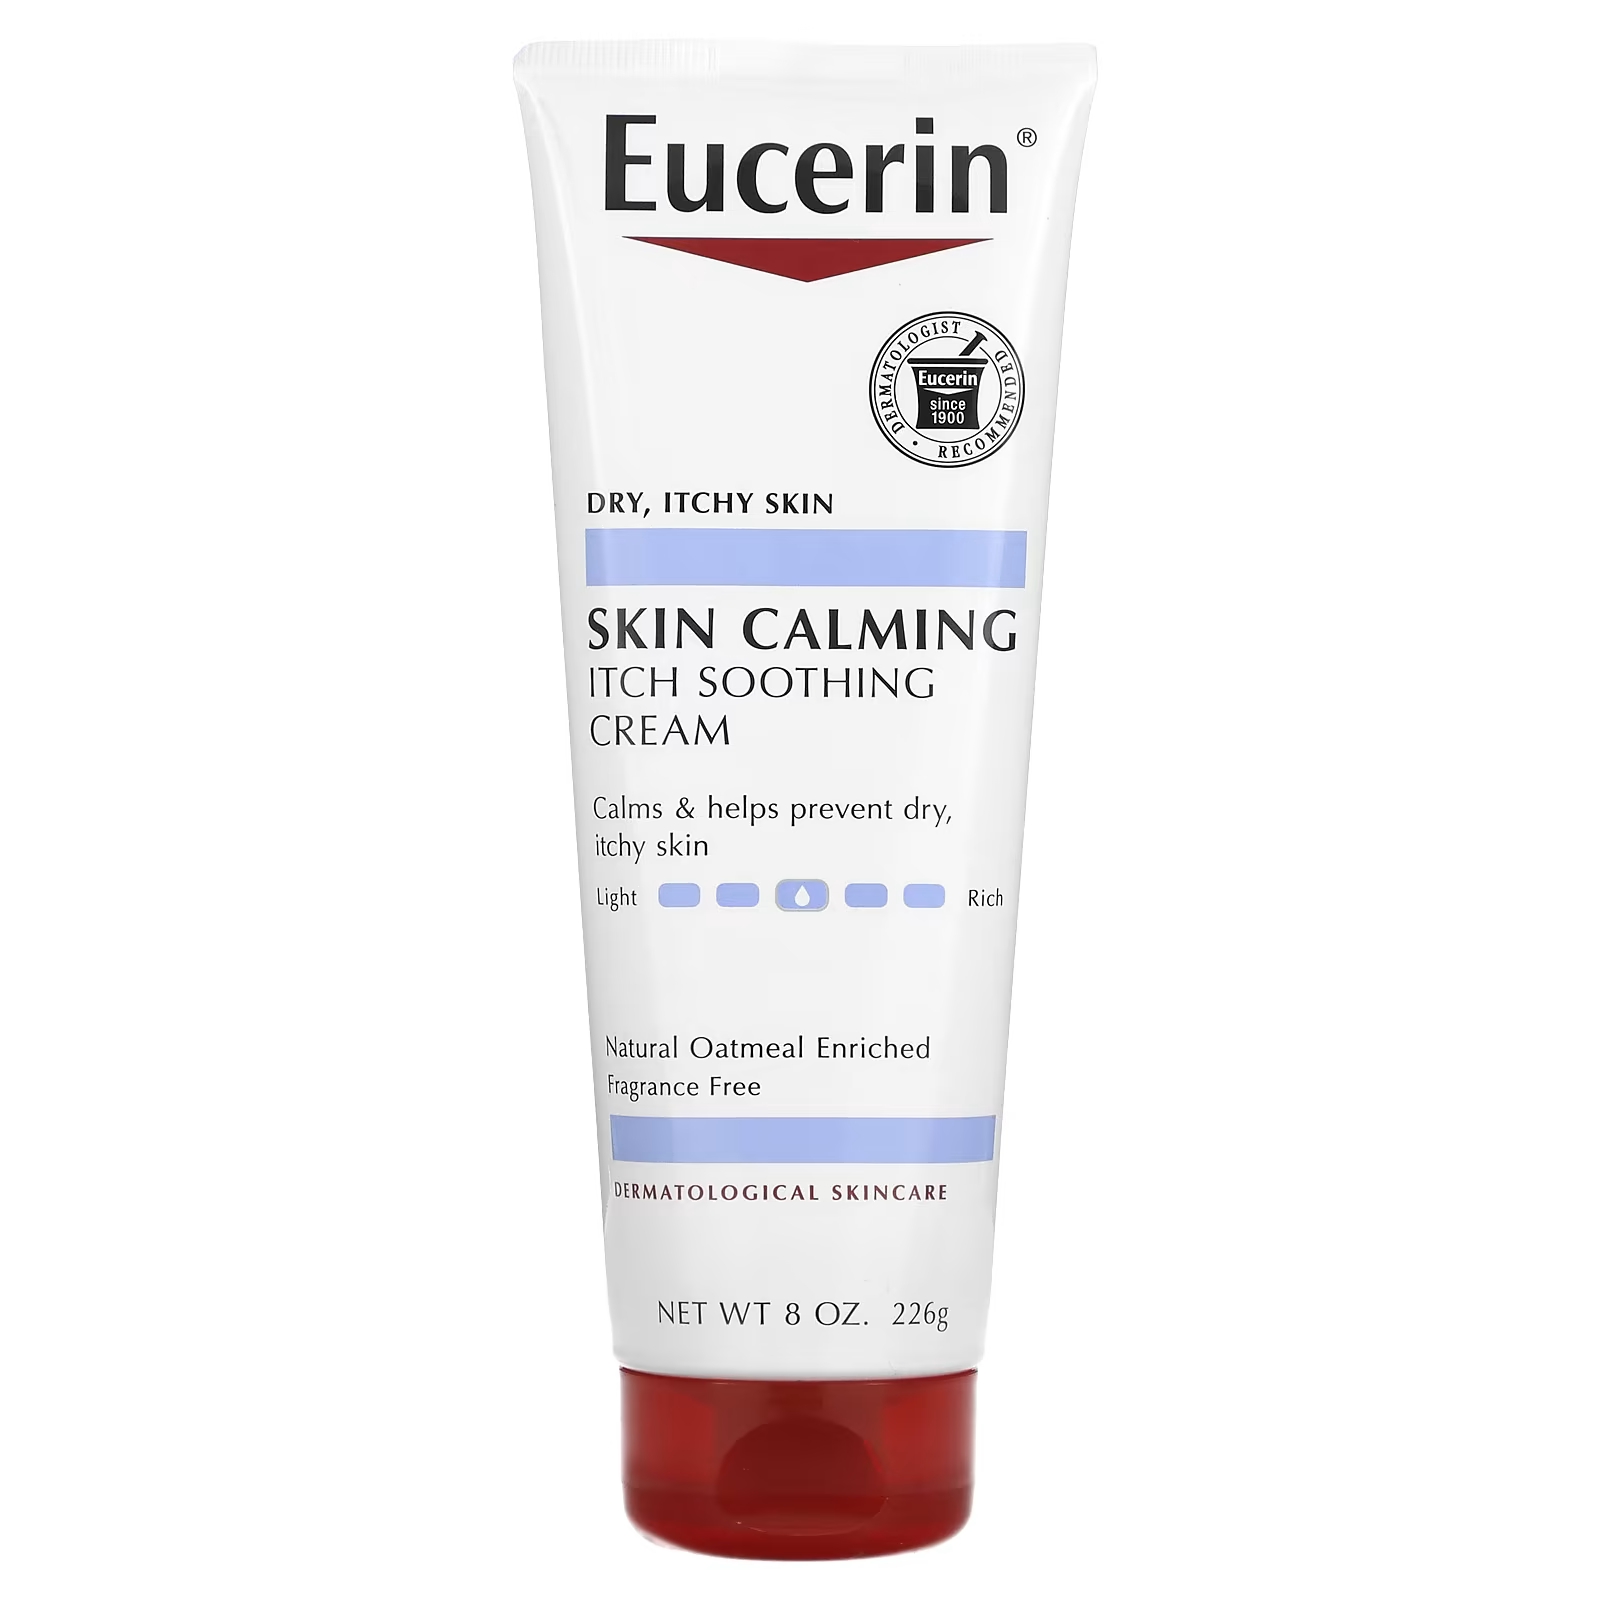 eucerin успокаивающий крем для сухой раздраженной кожи без отдушек 226 г 8 унций Eucerin Skin Calming Itch Успокаивающий крем для сухой зудящей кожи, без ароматизаторов, 8 унций (226 г)